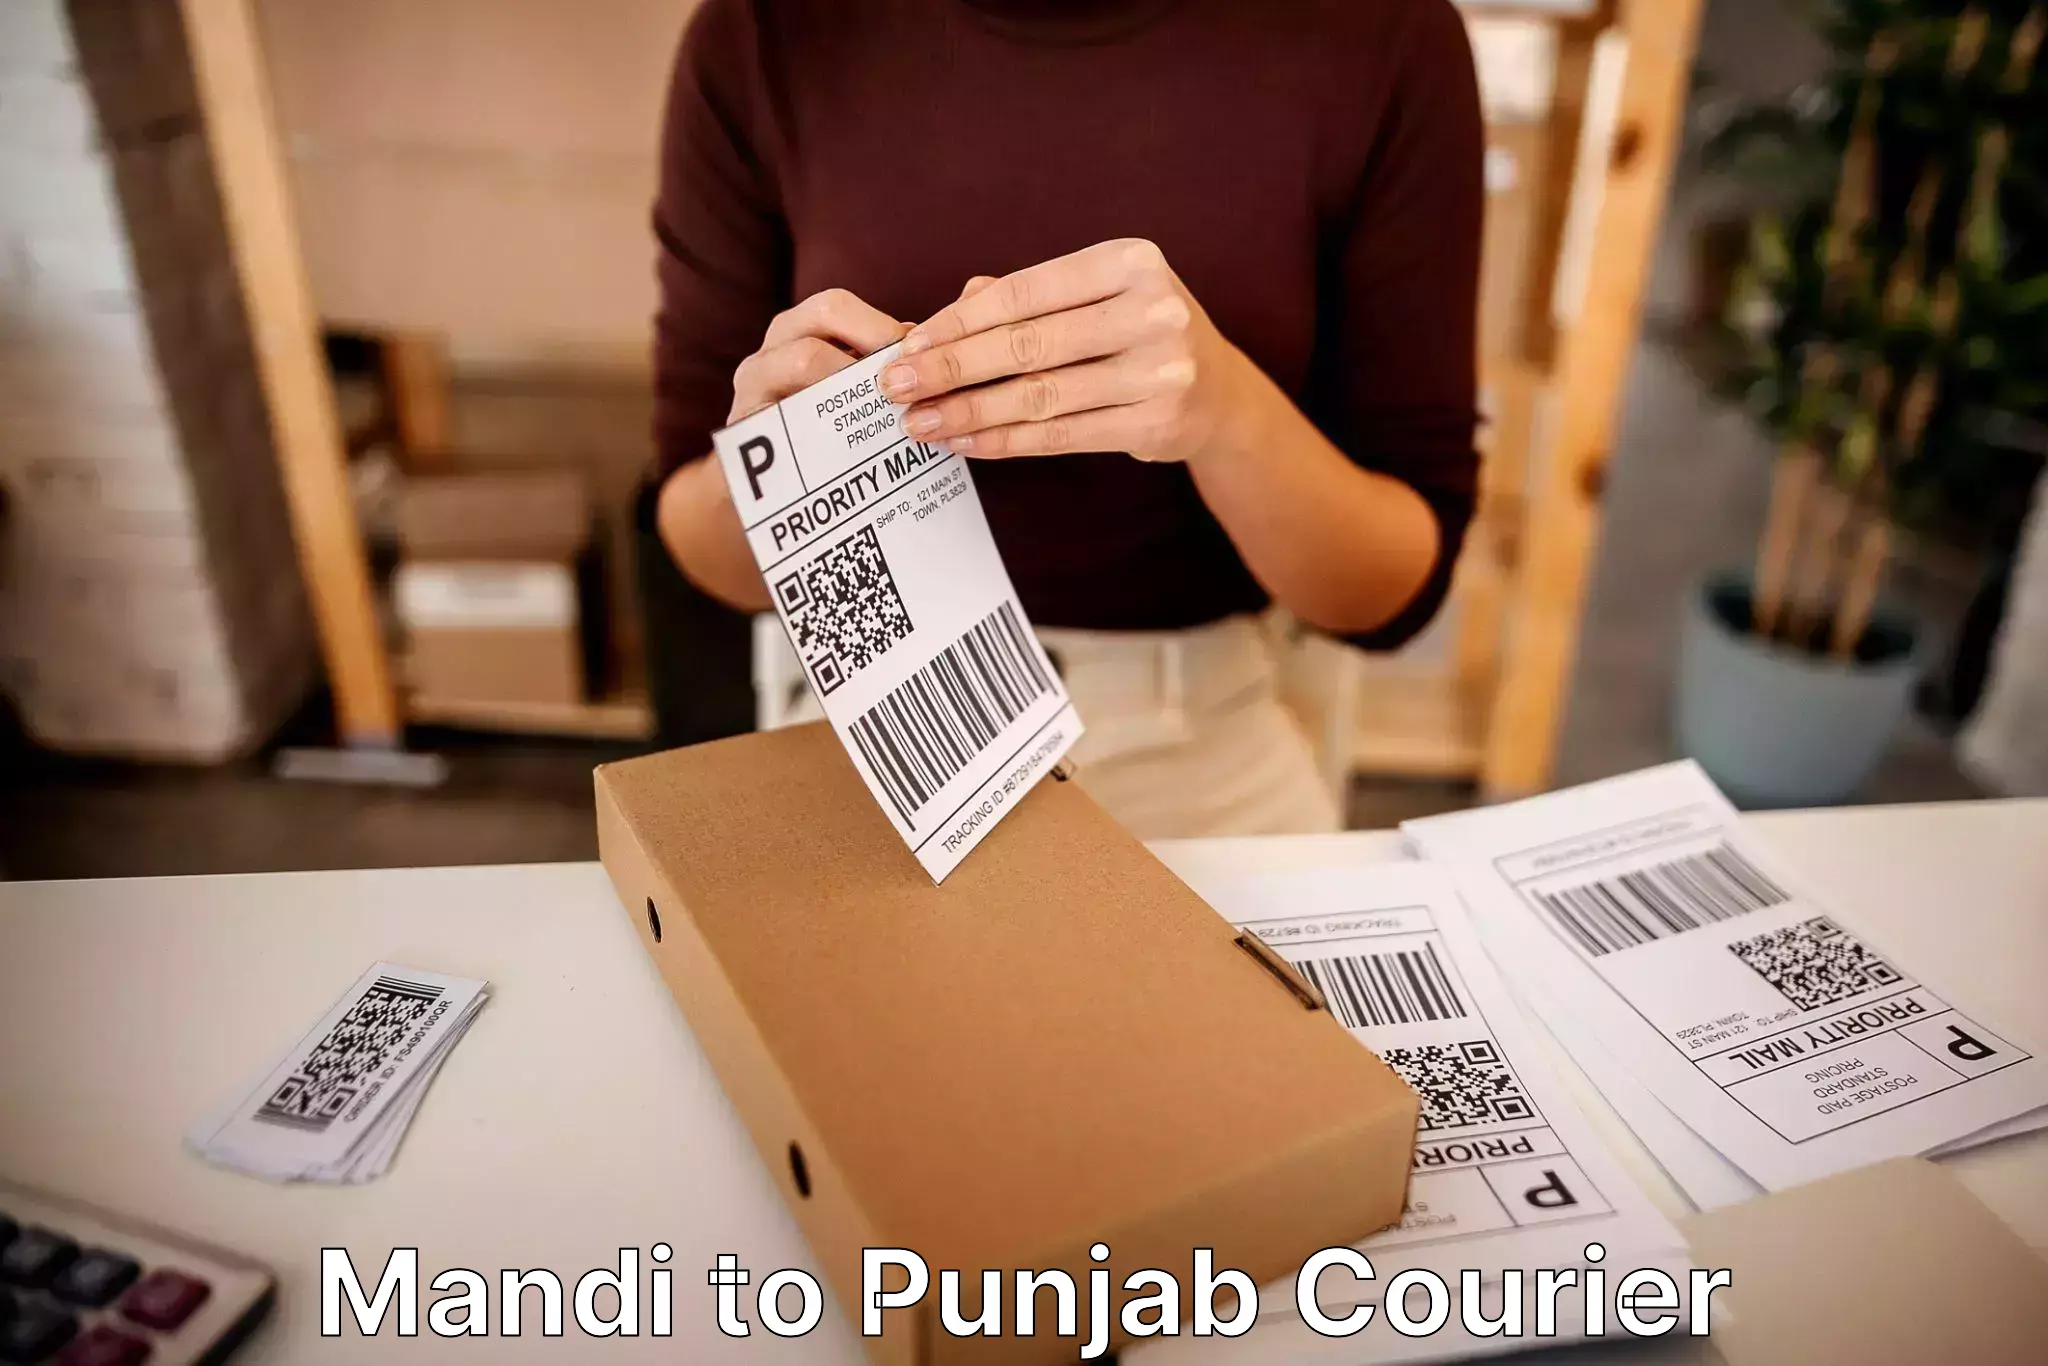 Stress-free household moving in Mandi to Punjab